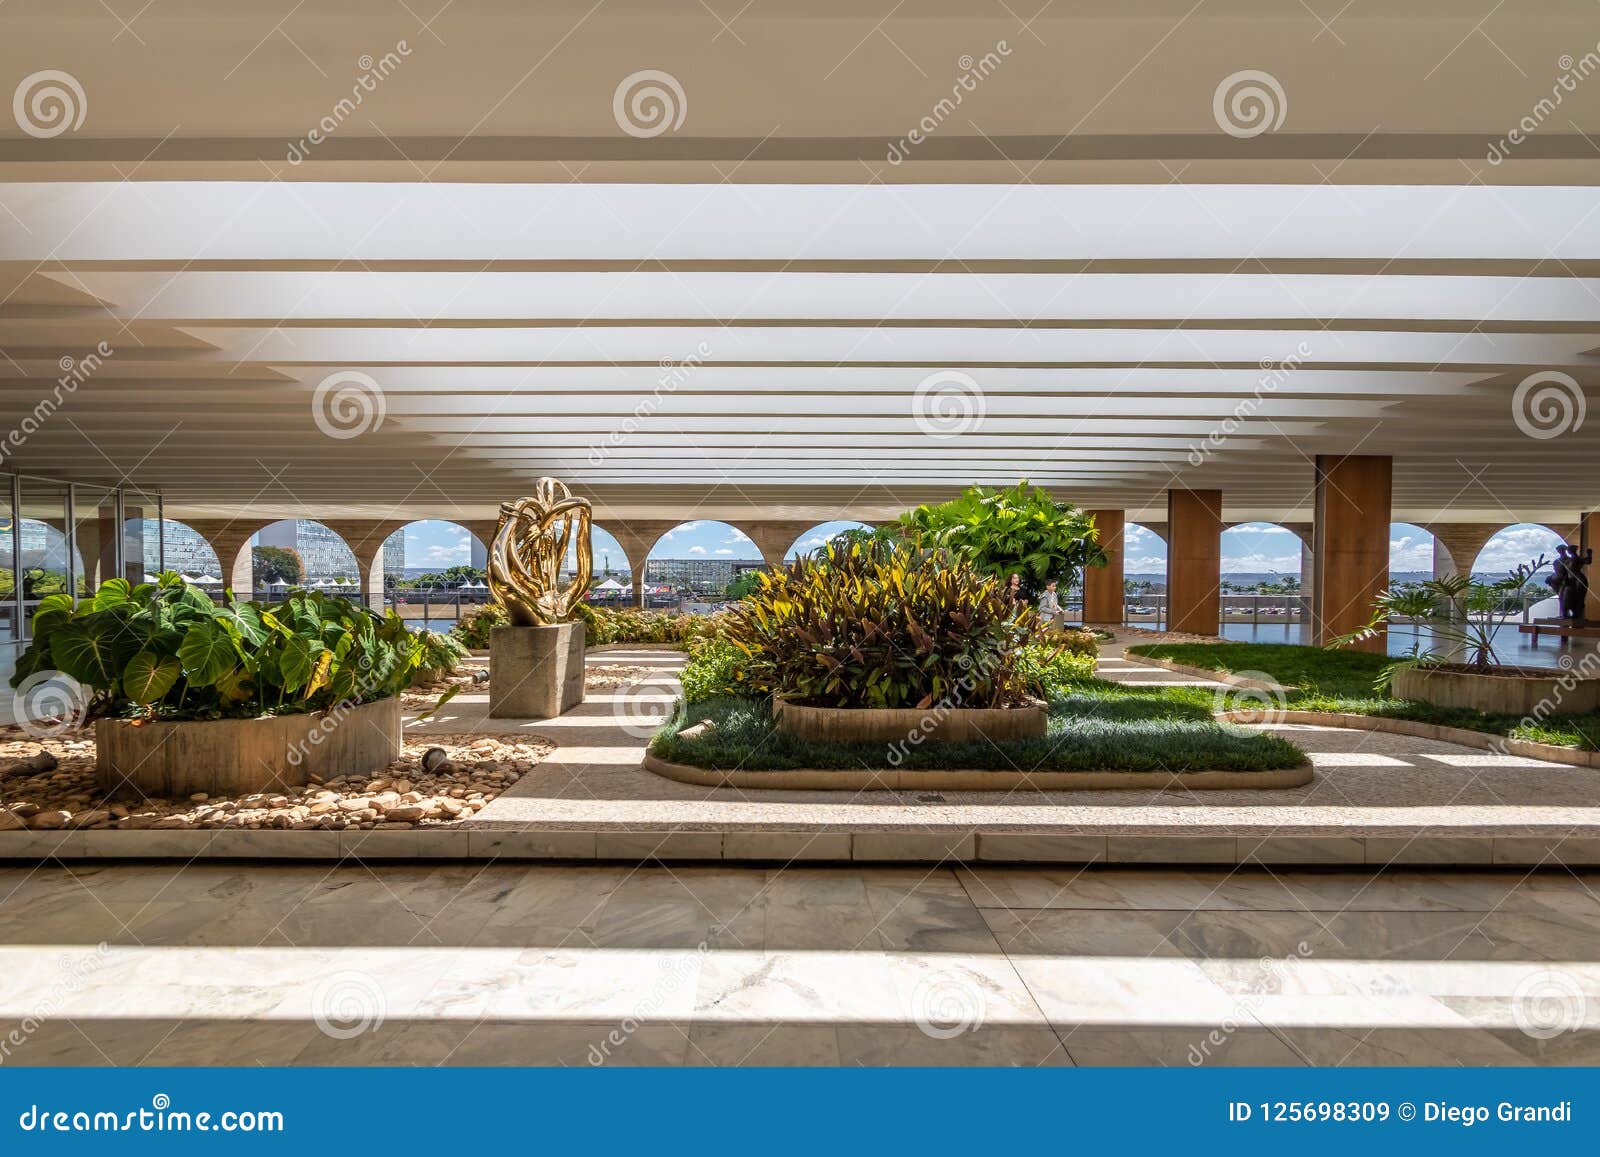 Jardines De La Terraza Del Palacio De Itamaraty Brasilia